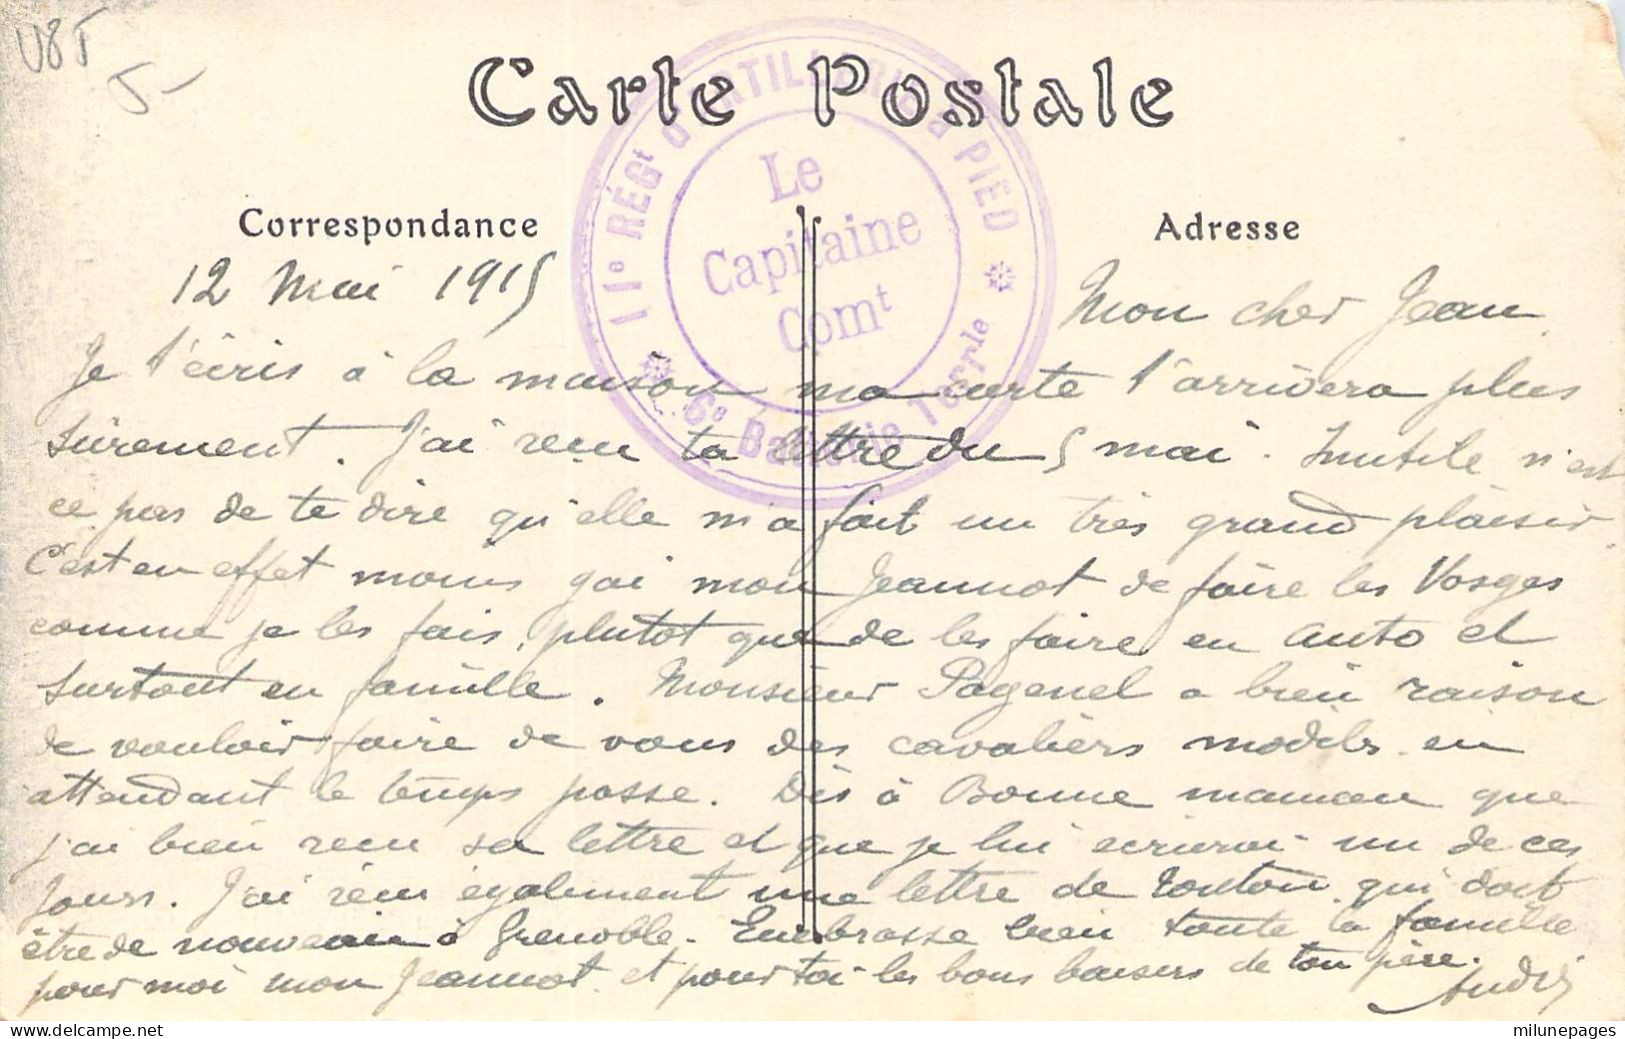 Cachet Double Cercle De Franchise Militaire Capitaine Commandant Le 11ème Régiment D'Artillerie à Pied Mai 1915 - Guerre De 1914-18